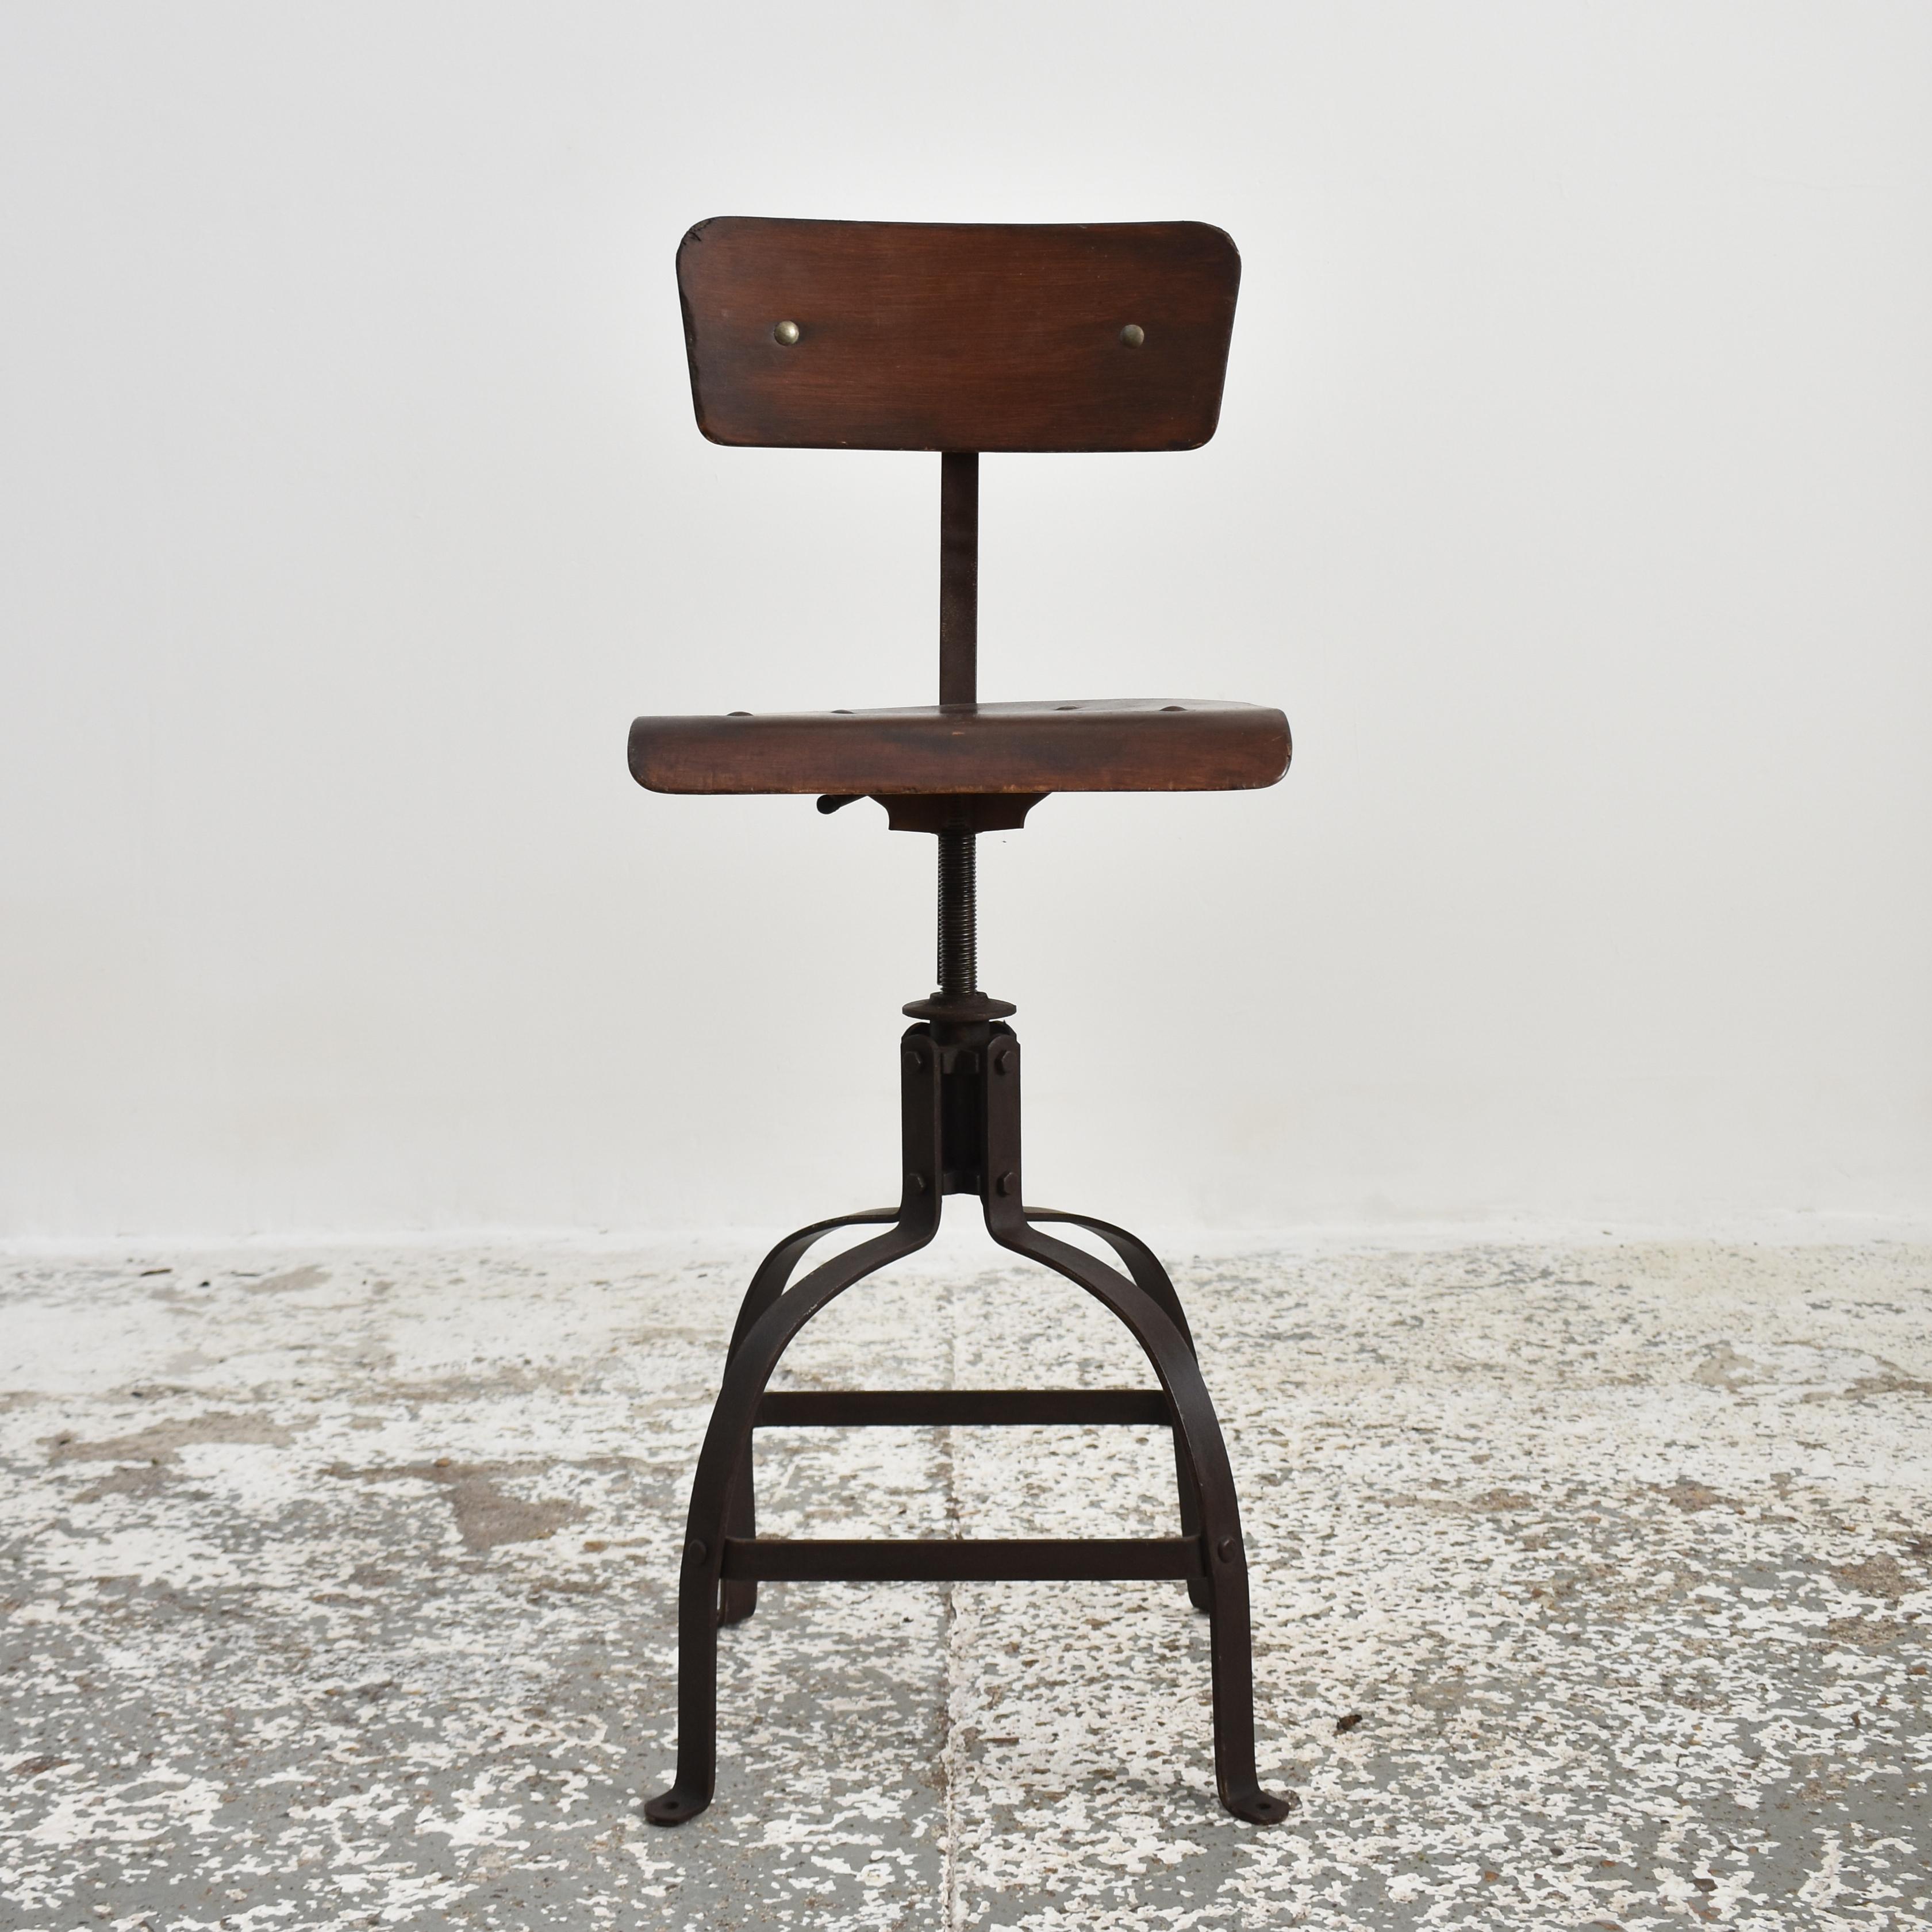 Chaise Bienaise originale française Modèle 204 - E

Une chaise industrielle Bienaise originale. Un classique de l'industrie française des années 1940, produit par les frères Nelson - modèle n° 204. Il s'agit d'une chaise solide dont l'assise et le